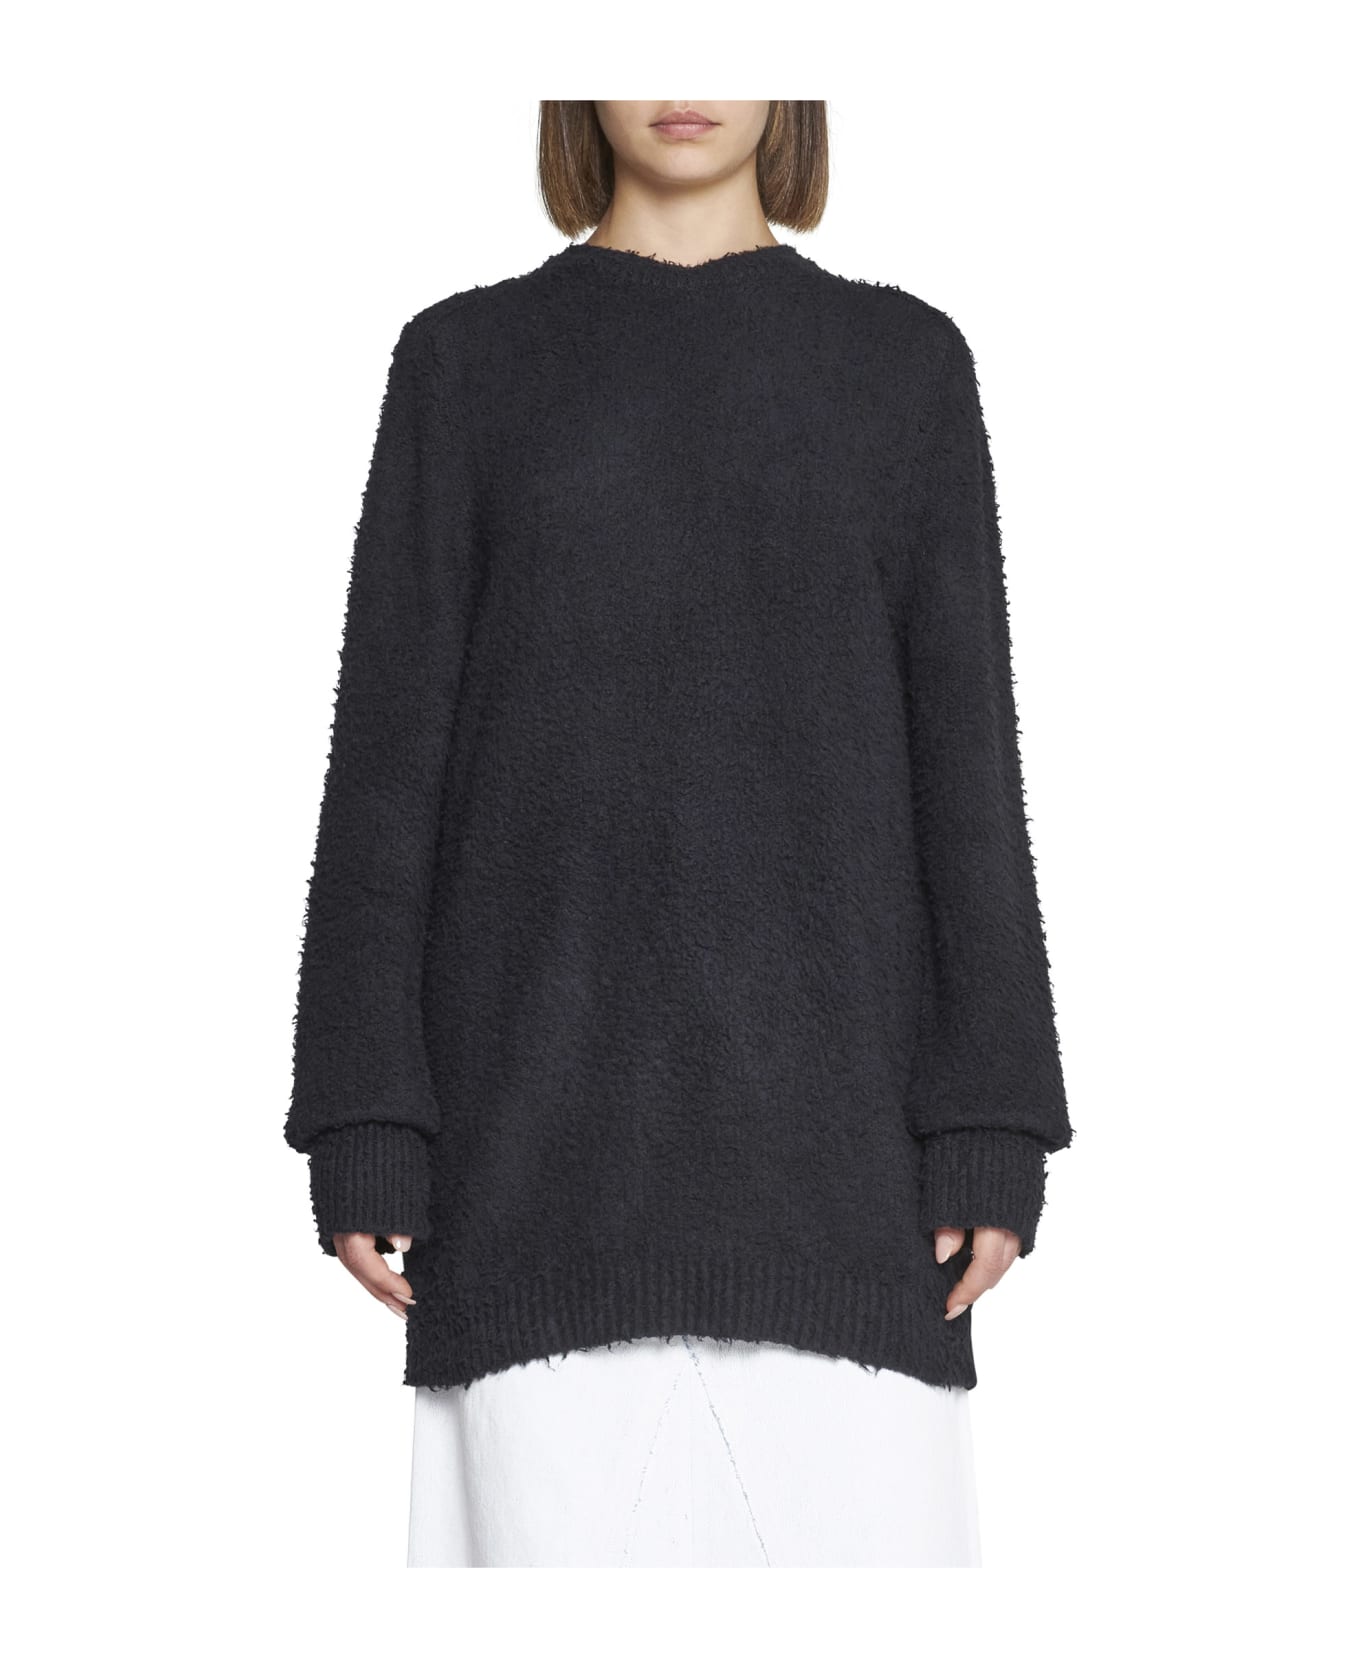 Maison Margiela Sweater - Black